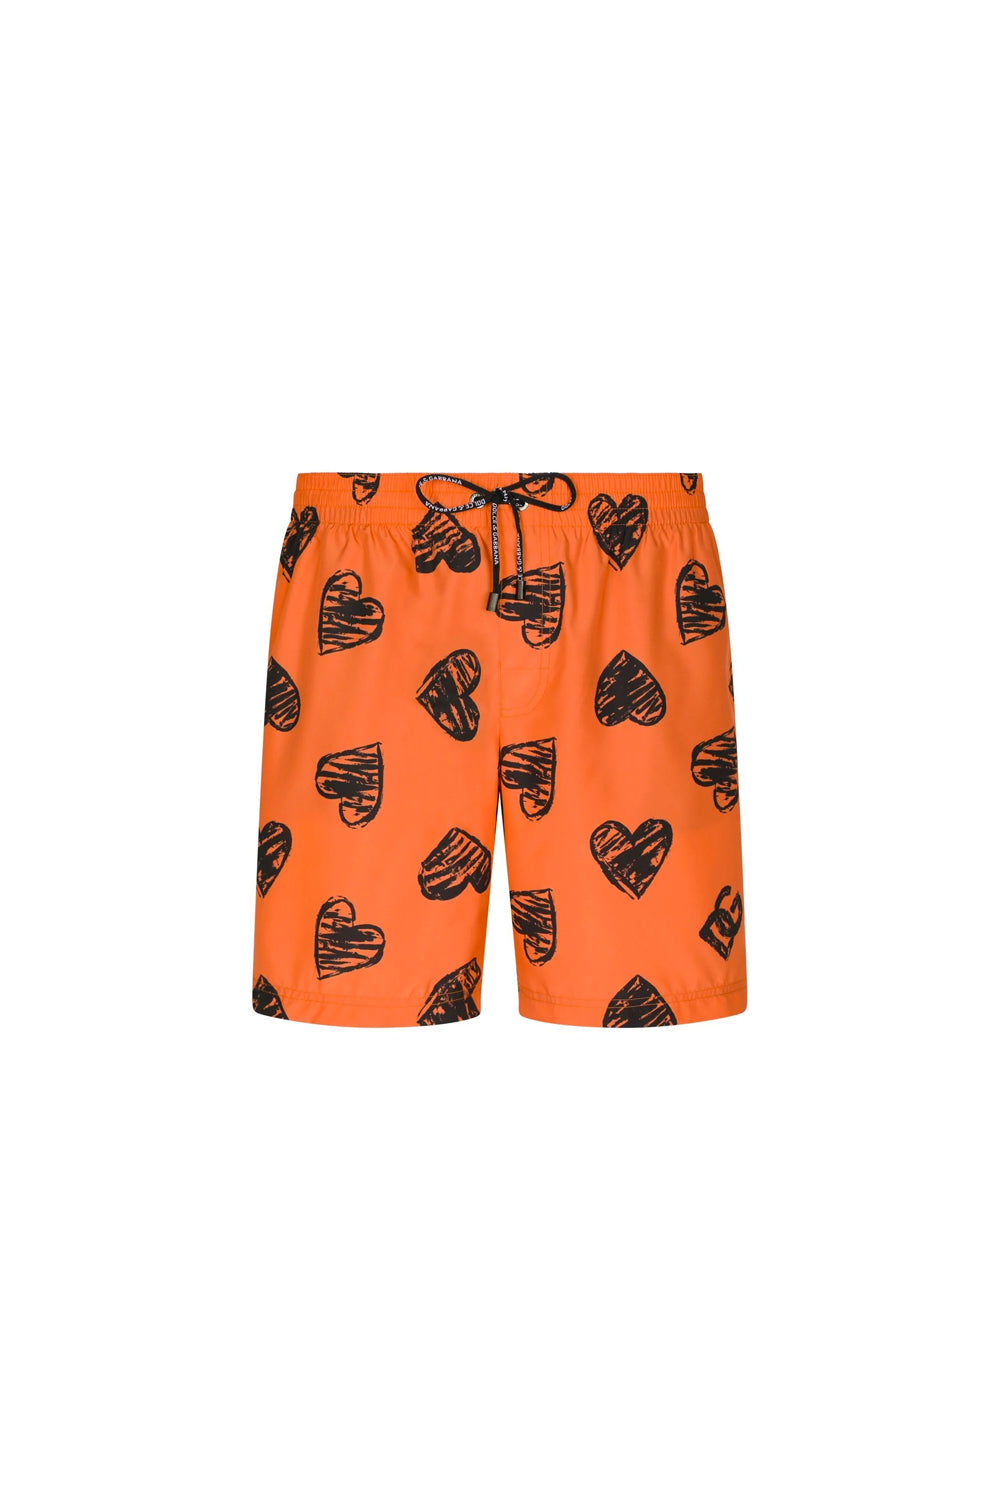 Dolce & Gabbana heart-print swim shorts